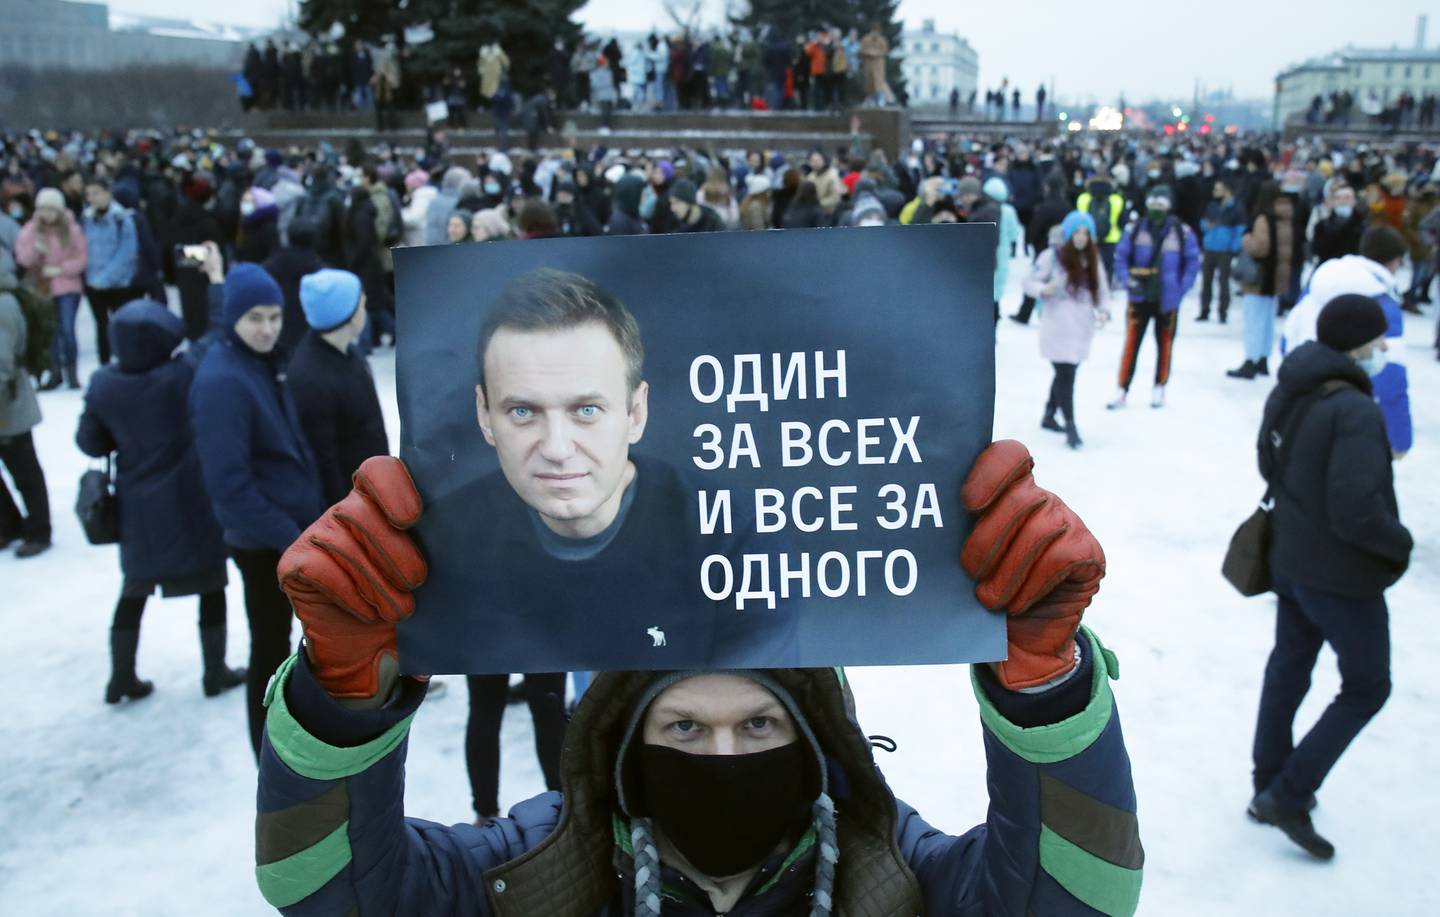 Det var i helgen store demonstrasjoner til støtte for å løslate den regimekritiske russiske politikeren Aleksej Navalnyj, som her i St. Petersburg.